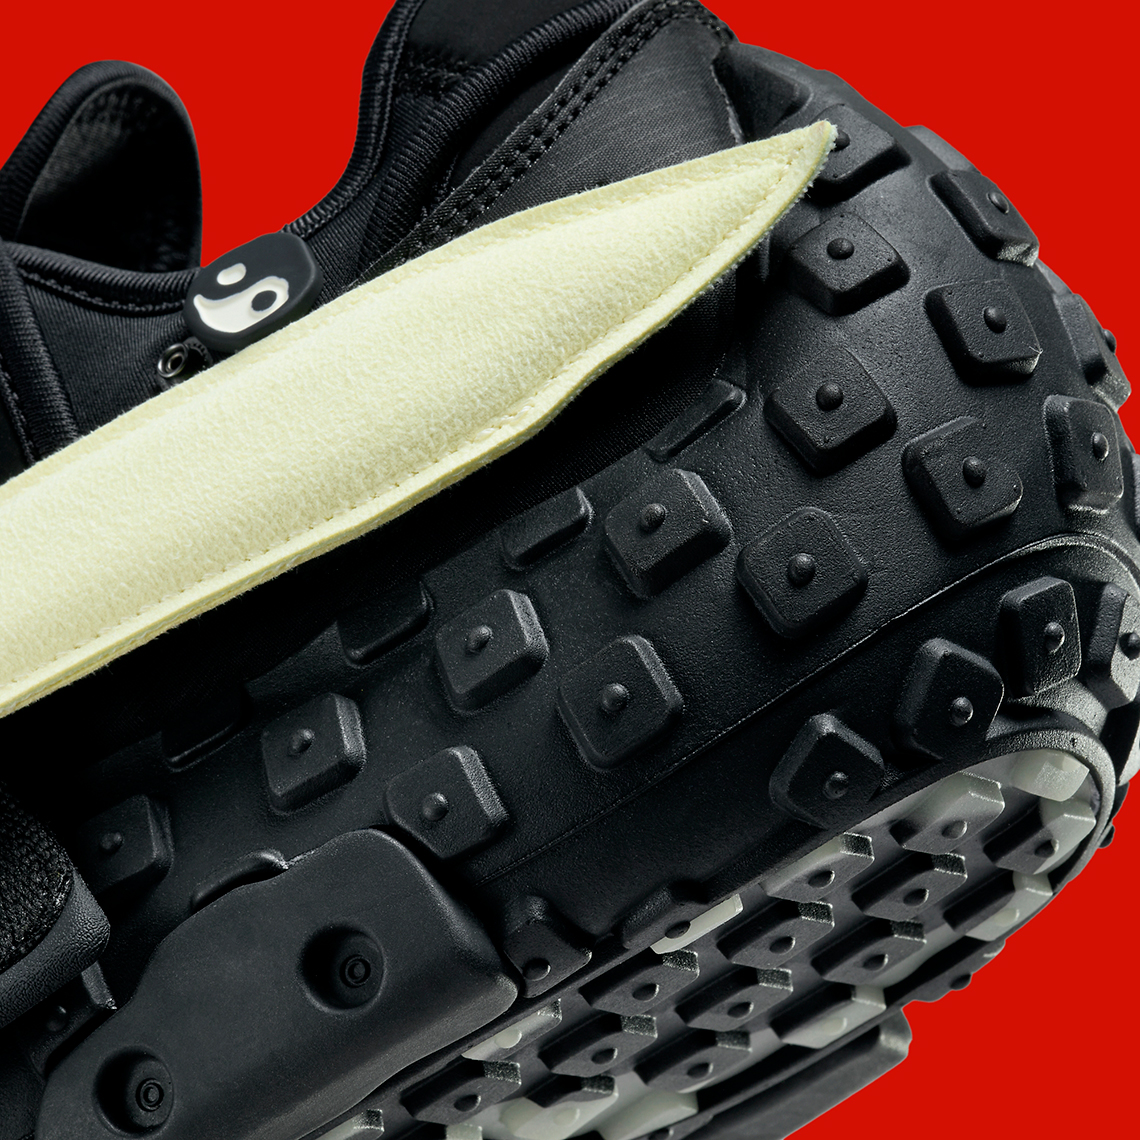 Cpfm Nike Flea 2 Black Alabaster Dv7164 001 Release Date 8